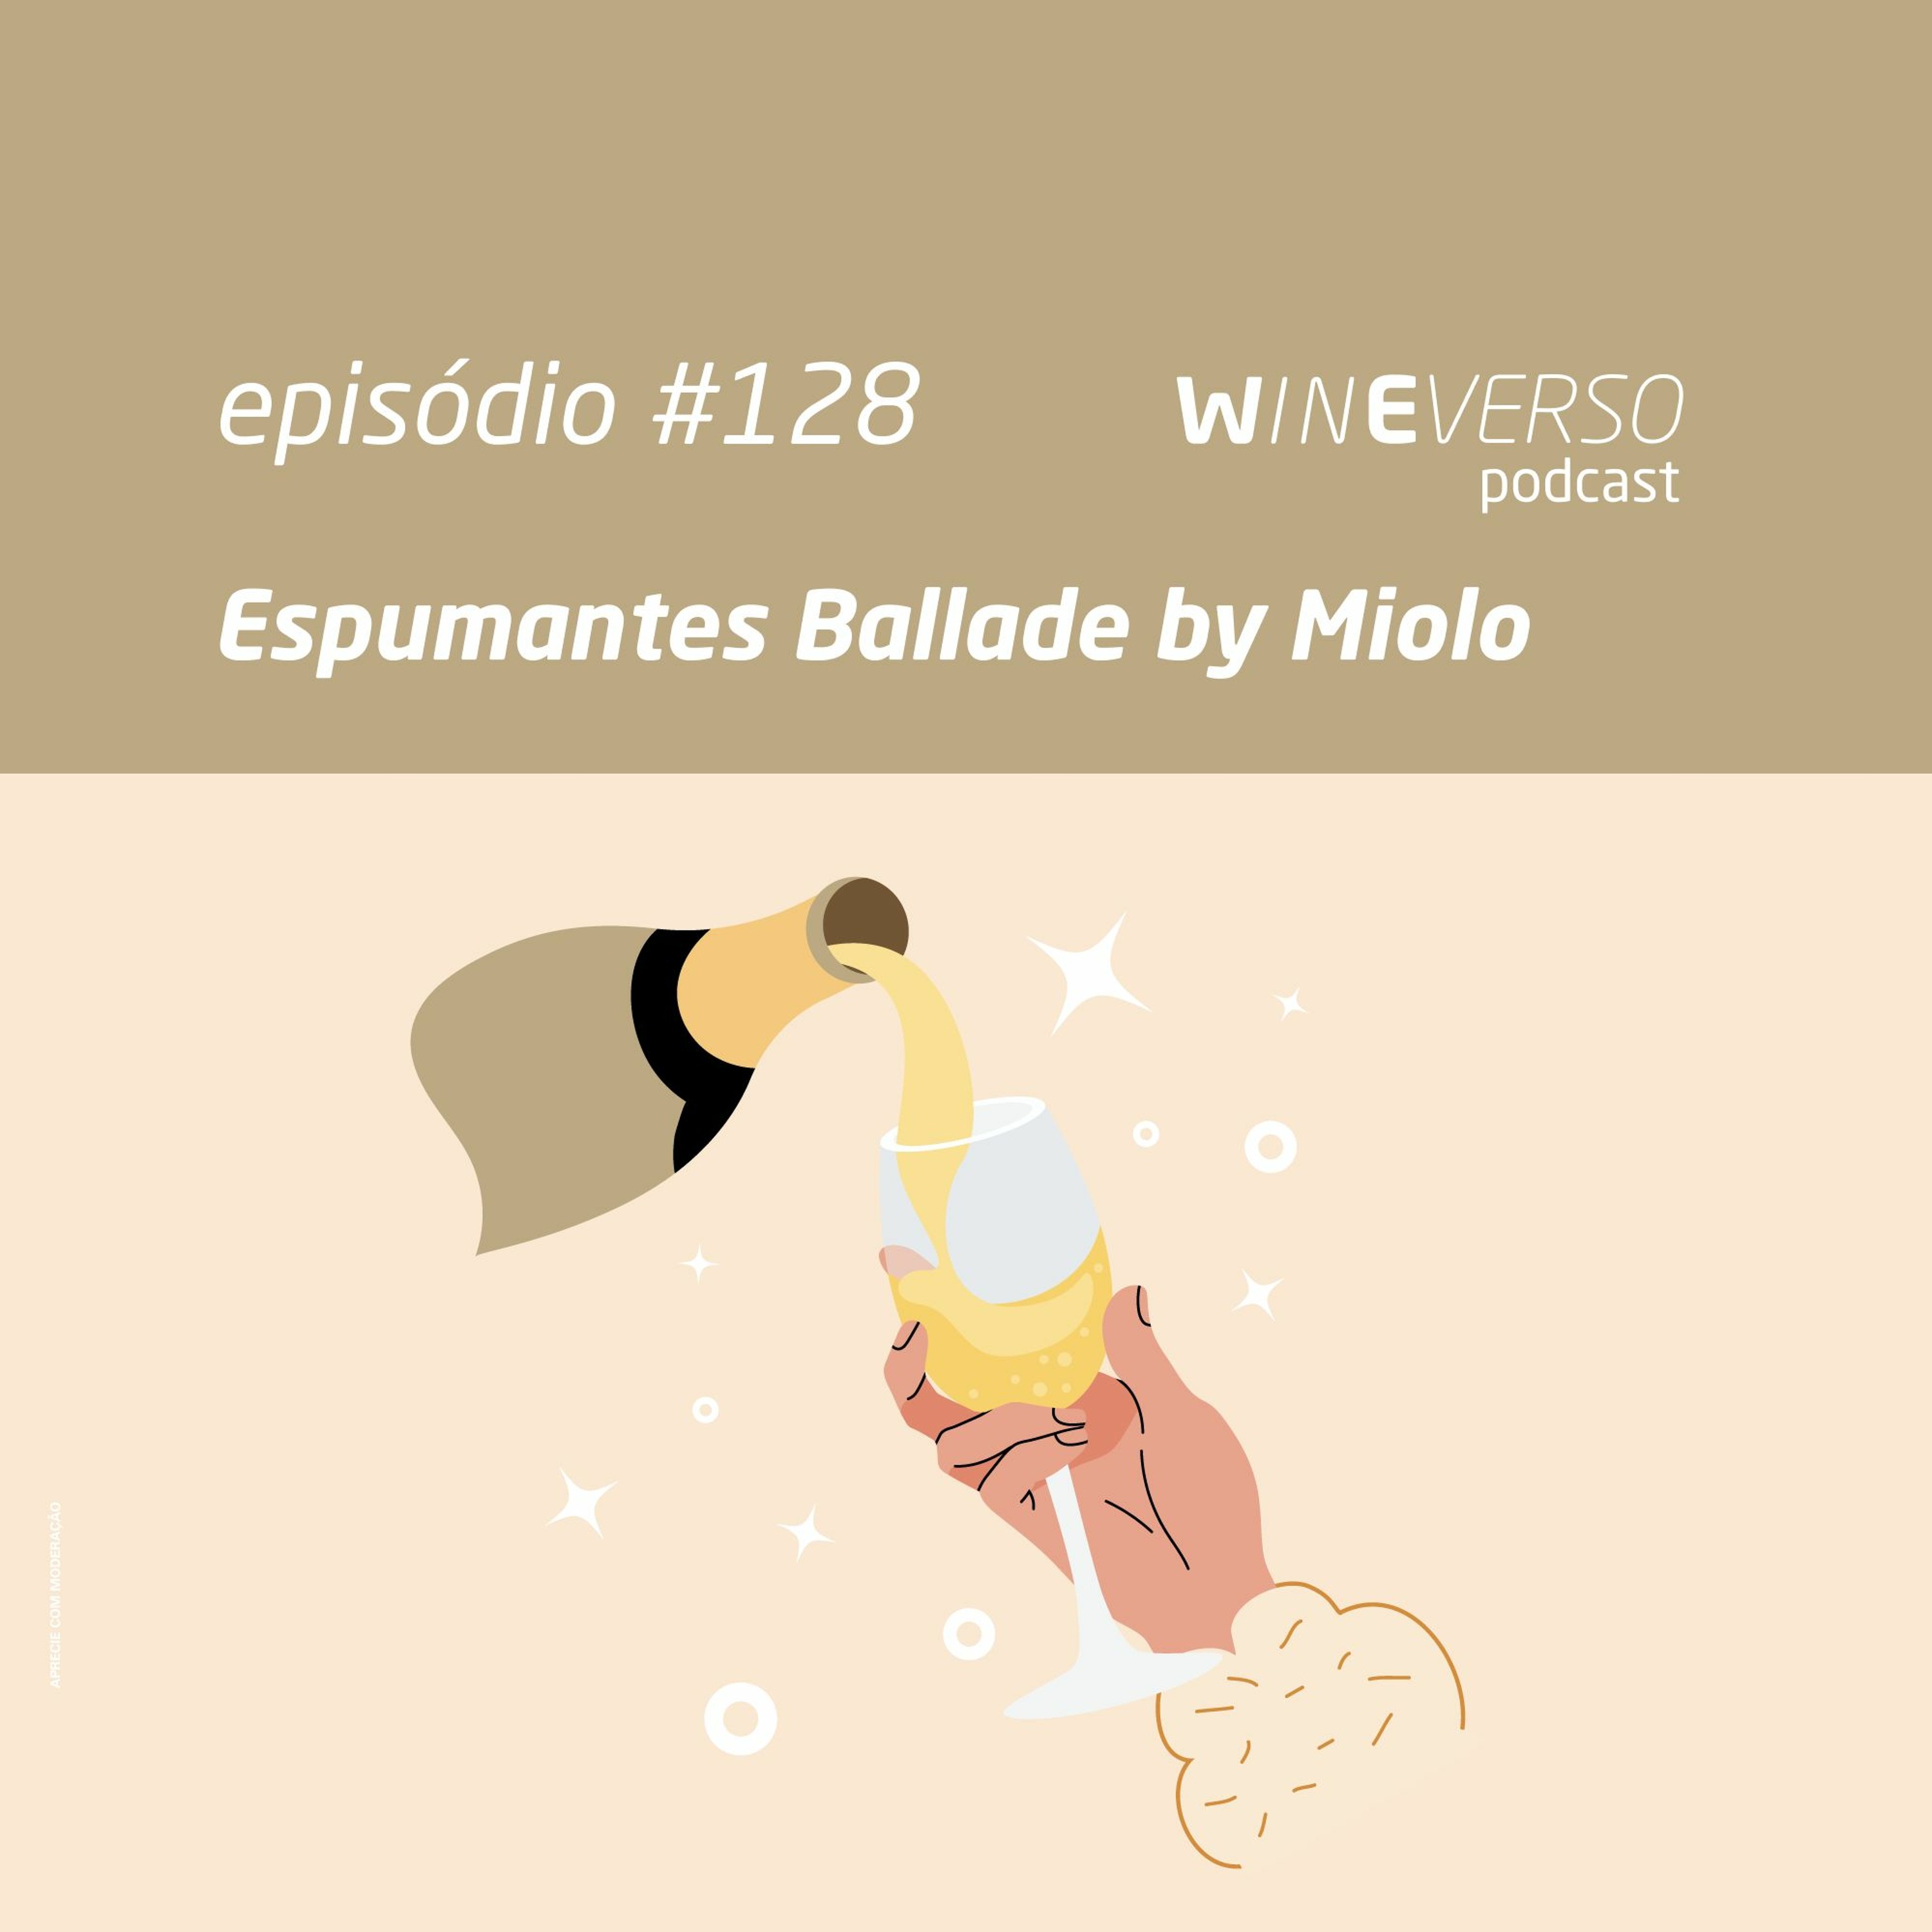 Espumantes Ballade by Miolo